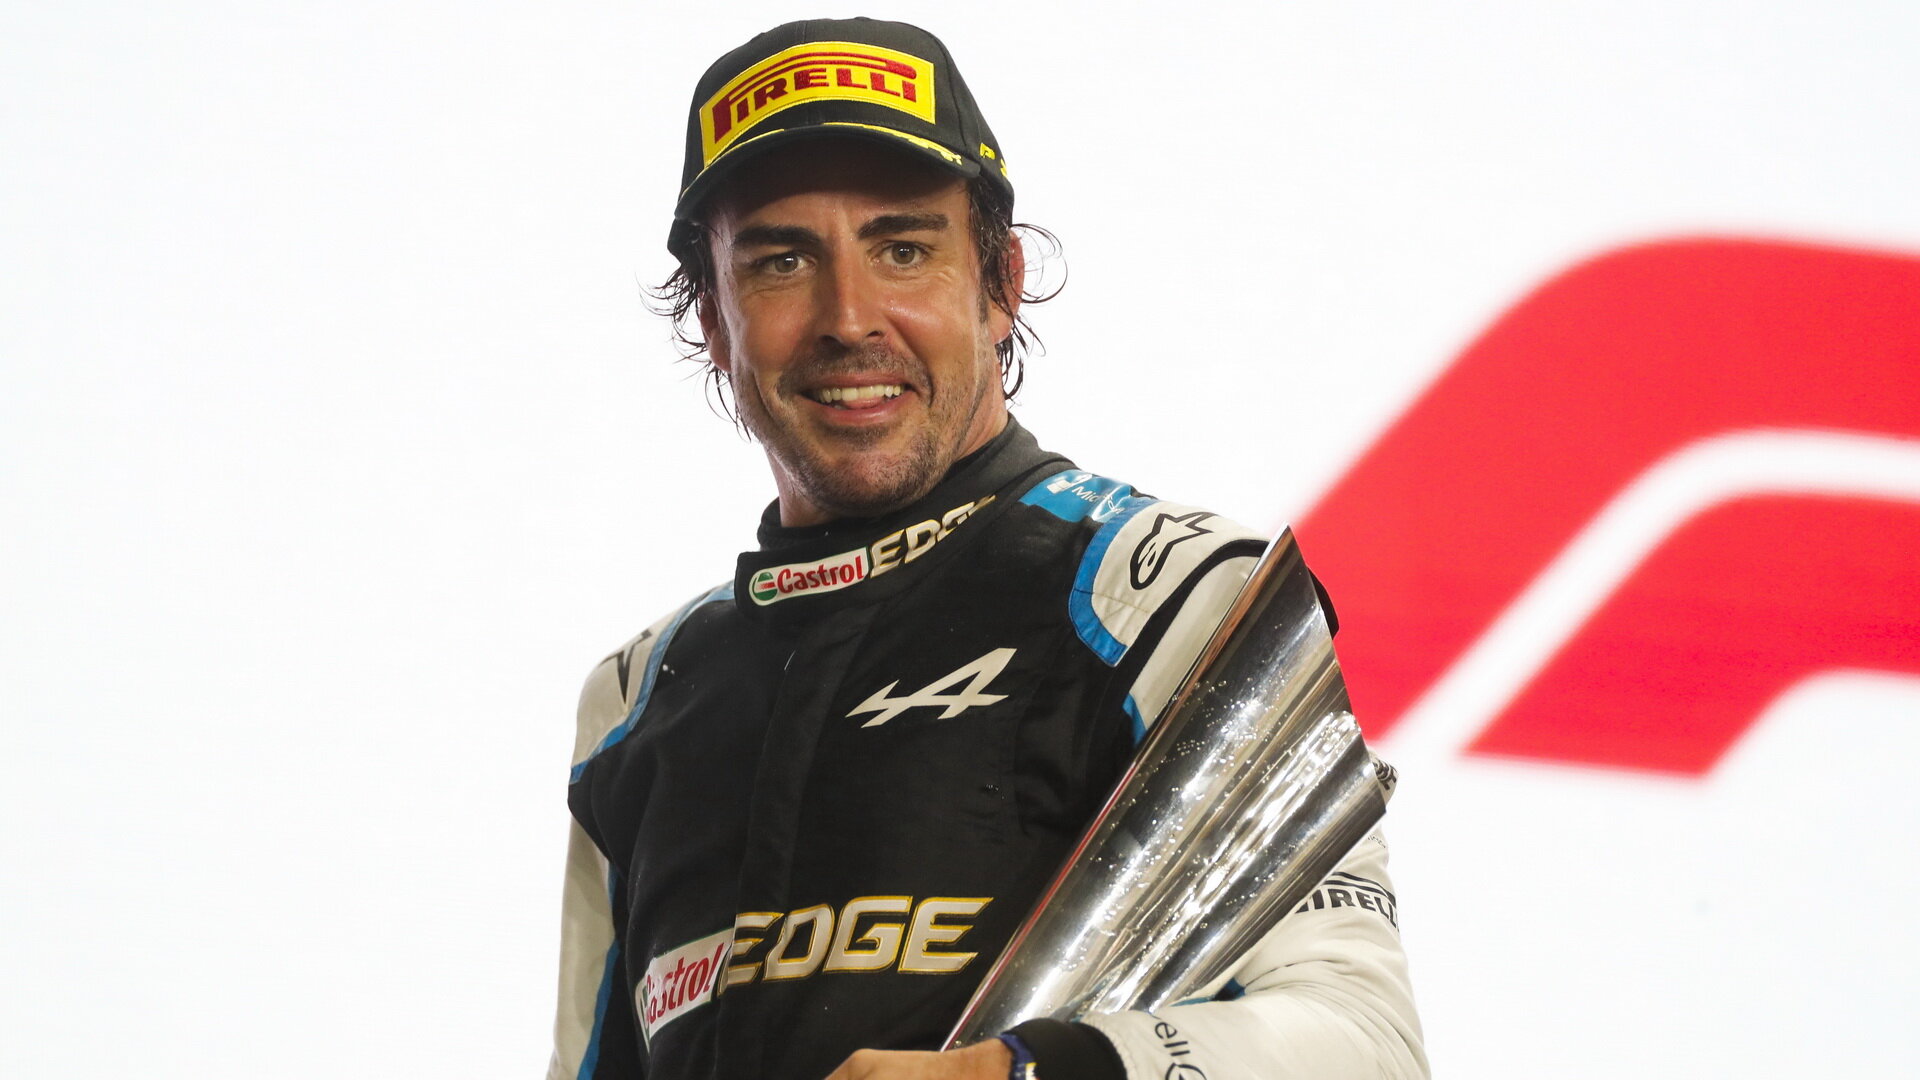 Fernando Alonso prožívá úspěšný návrat do F1, po 7 letech stanul opět na pódiu